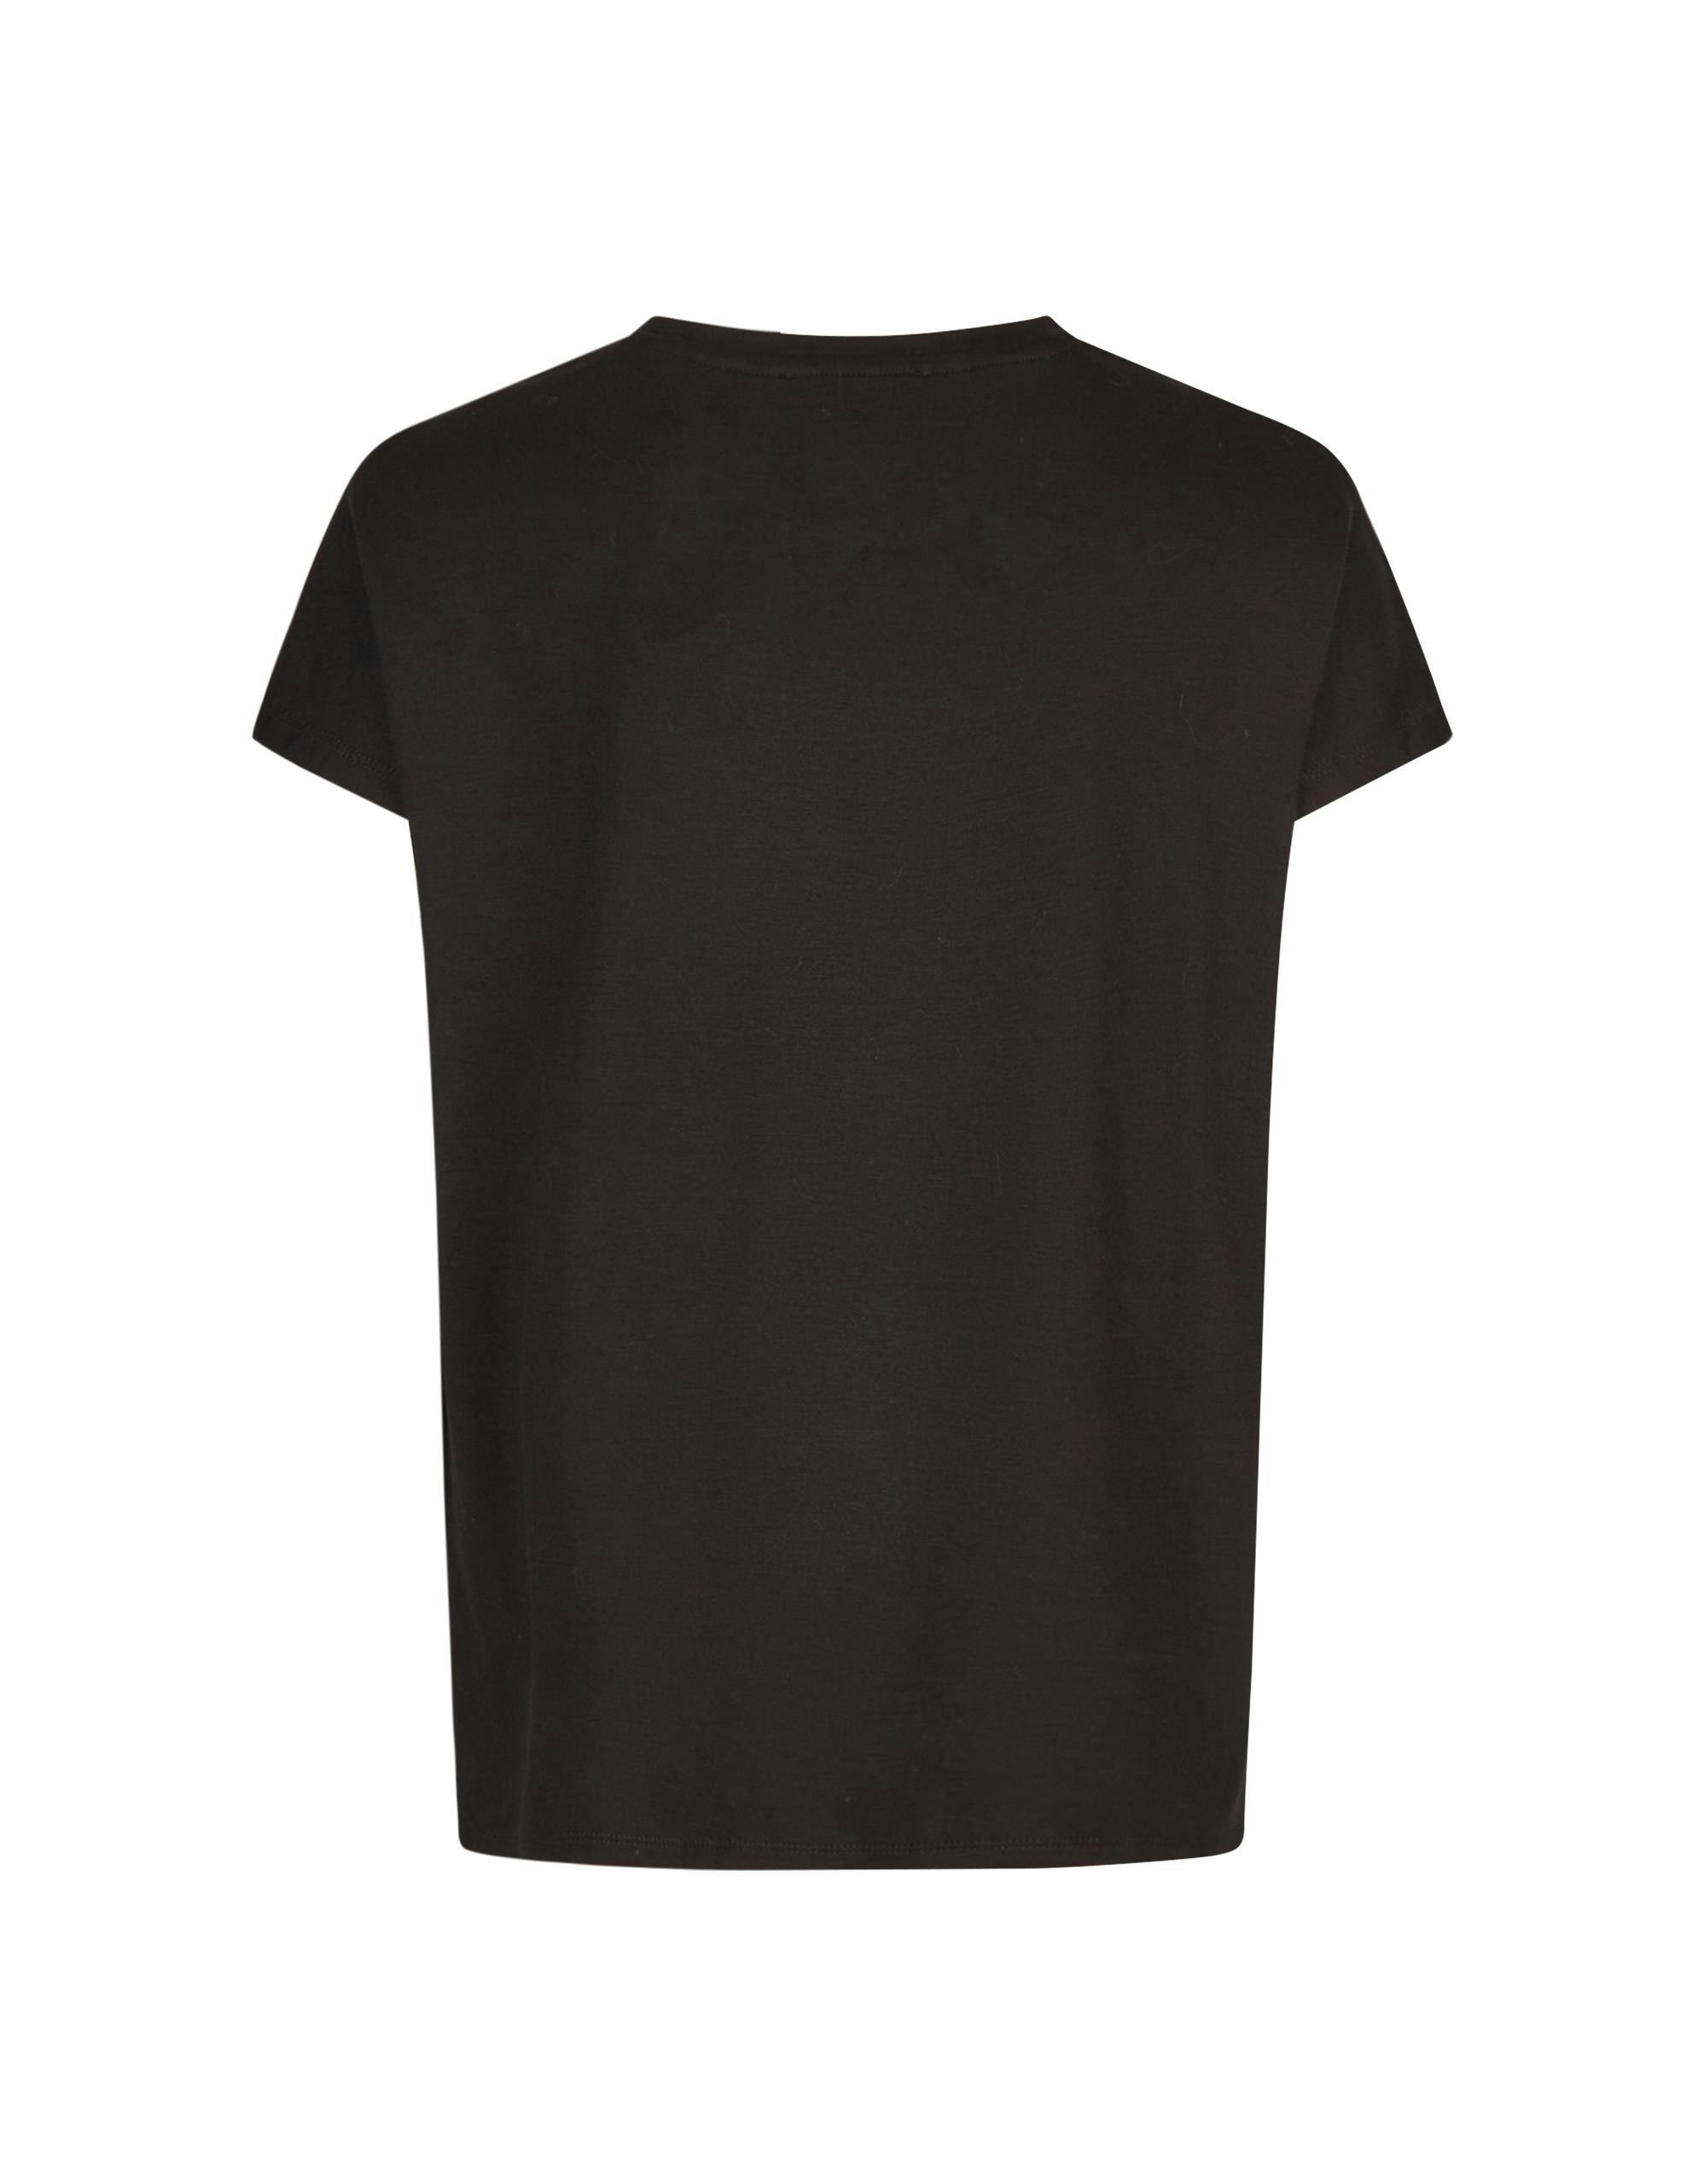 Mode Hauts T-shirts Atmosphere T-shirt gris clair-noir mouchet\u00e9 style d\u00e9contract\u00e9 